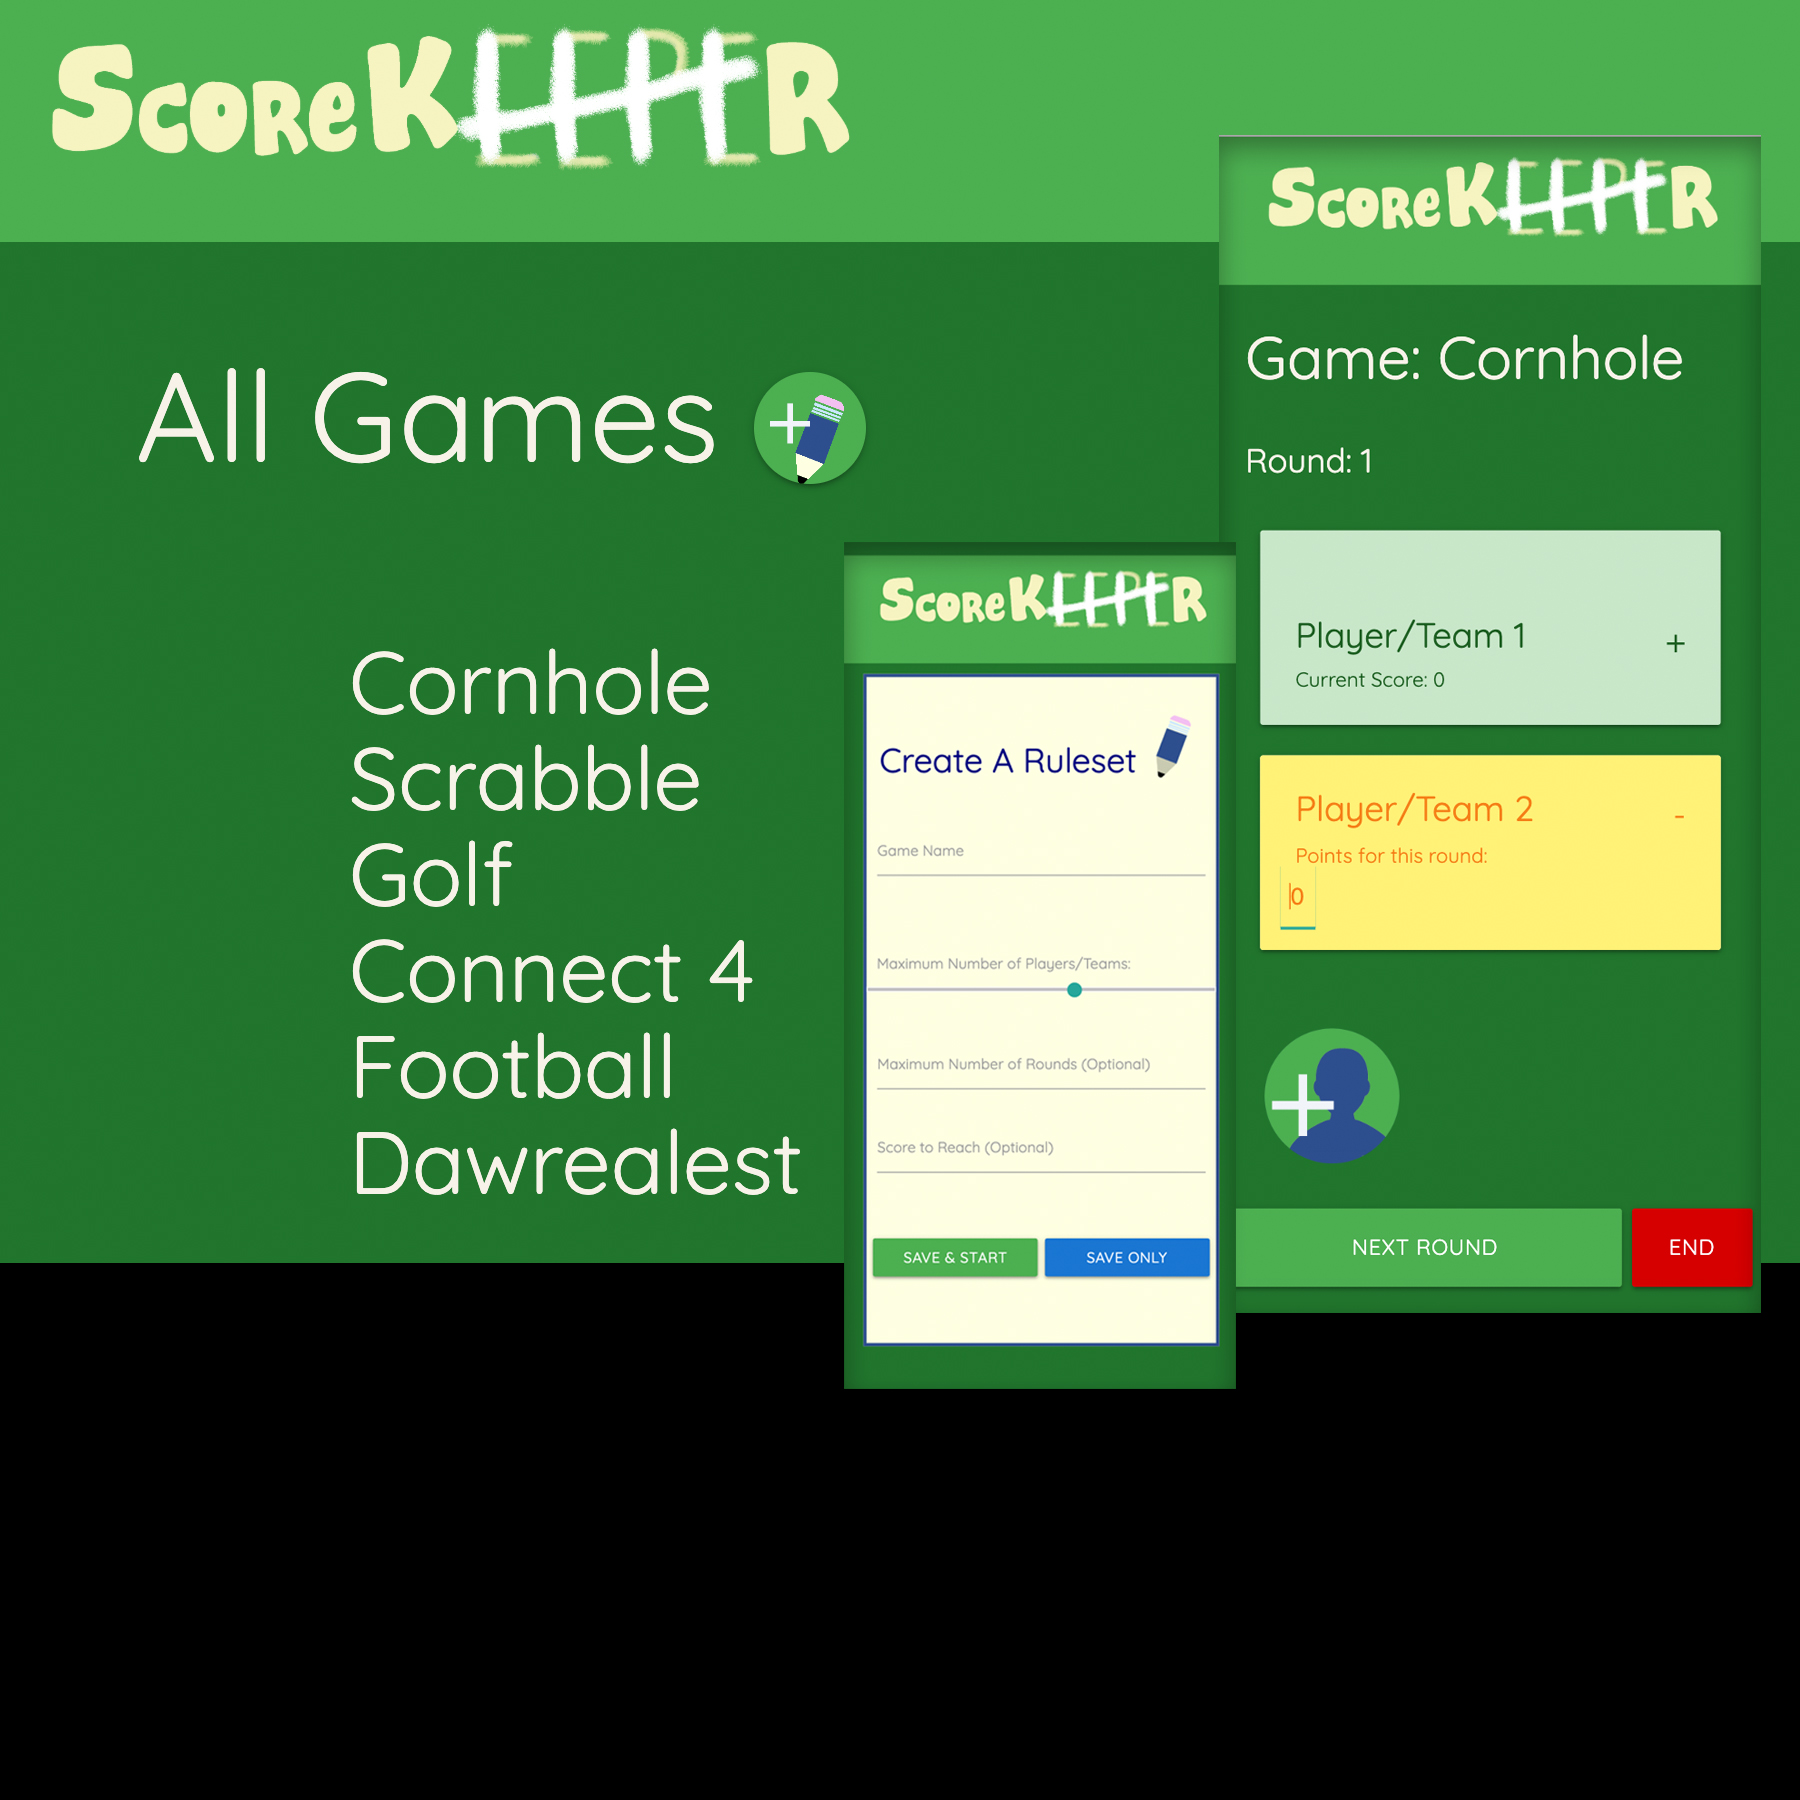 examples of various screens in the ScoreKEEPER app